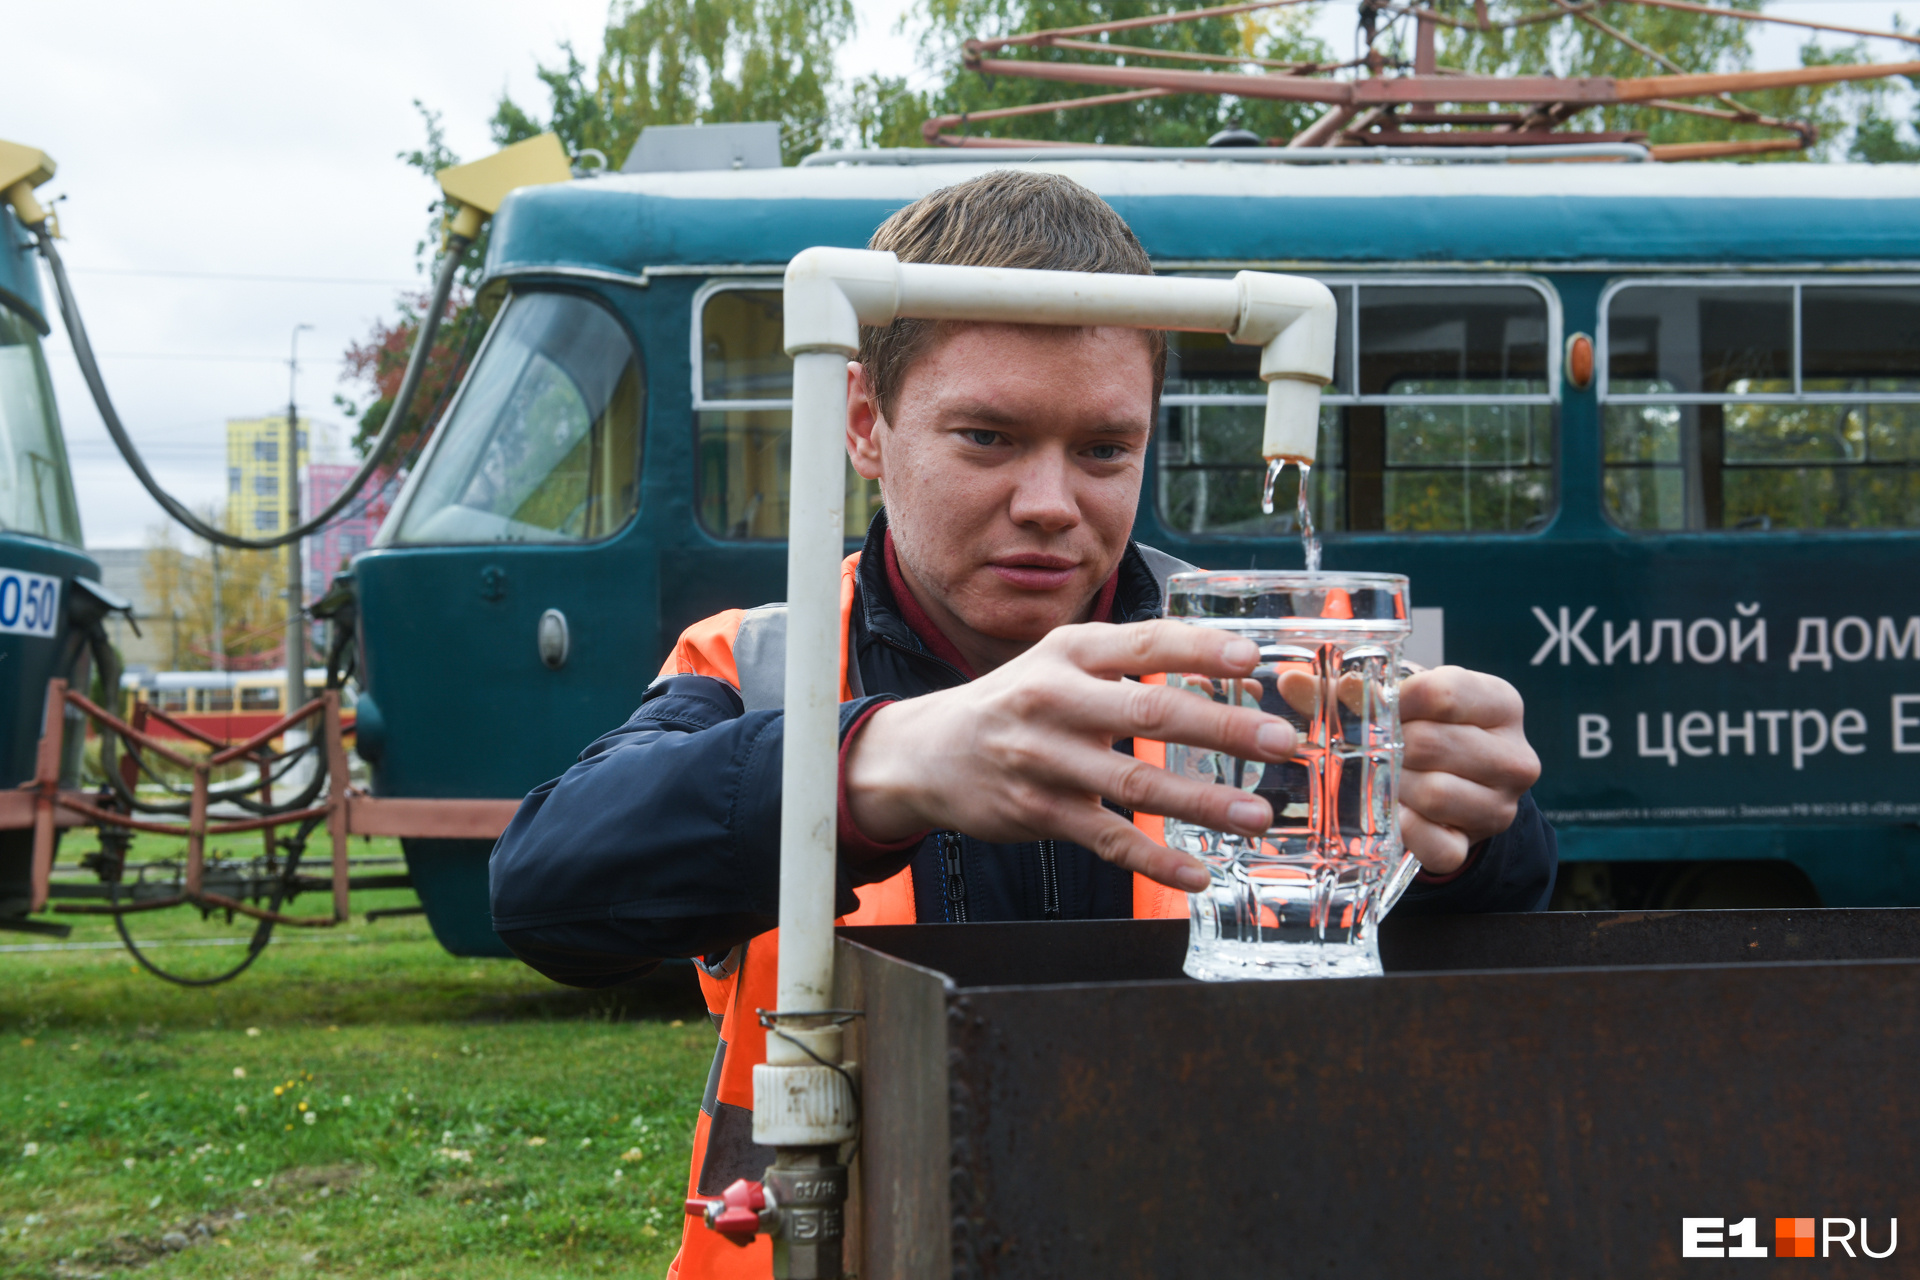 Во время конкурса Сергей провез в трамвае полный стакан воды и не пролил ни капли